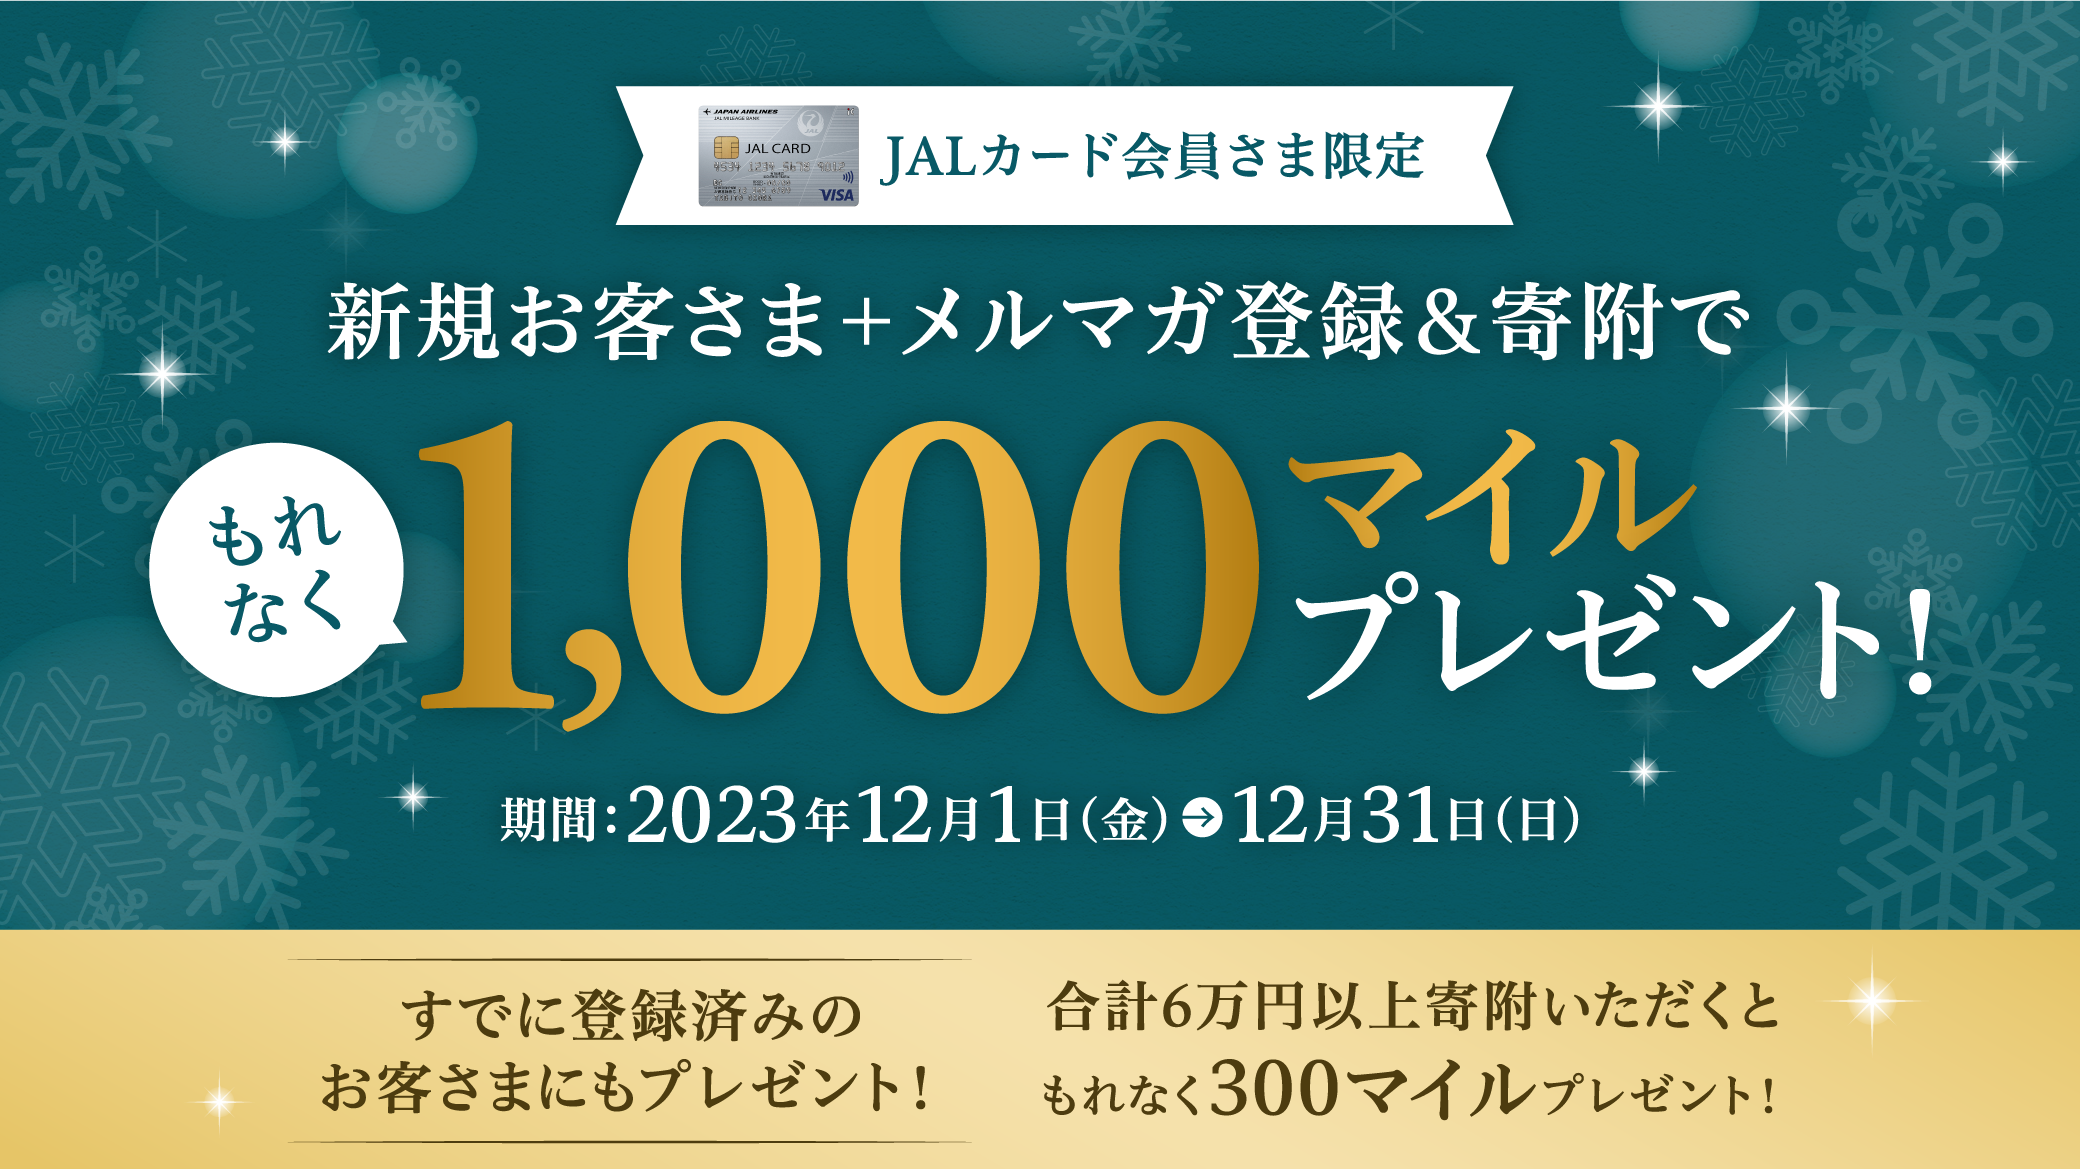 JALカード会員さま限定 新規お客さま登録&寄附でもれなく600マイルプレゼント！